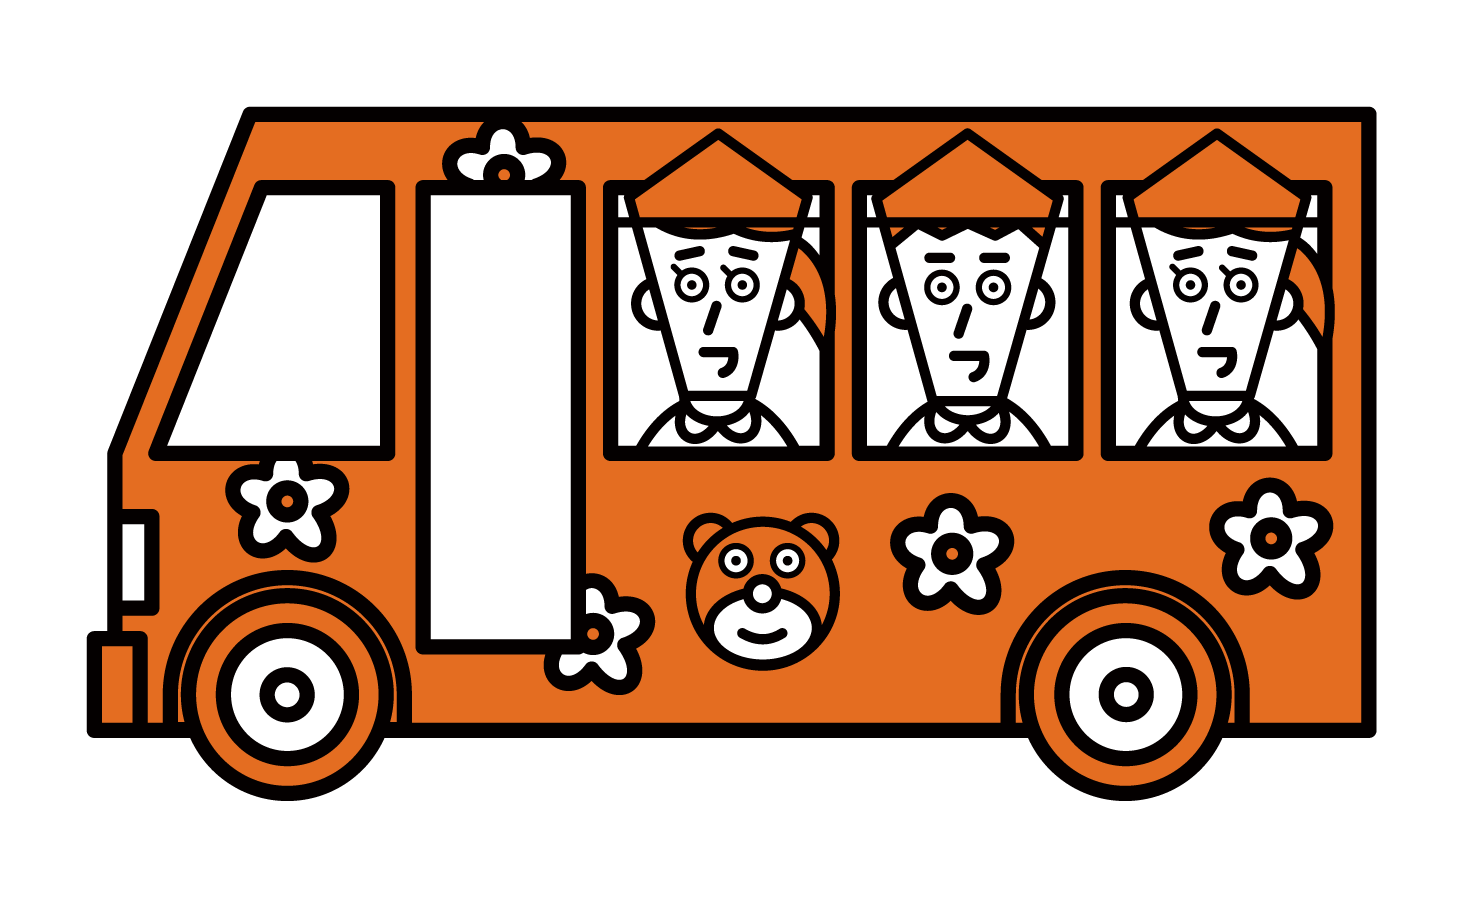 셔틀 버스에 유치원과 보육원 아이들의 그림